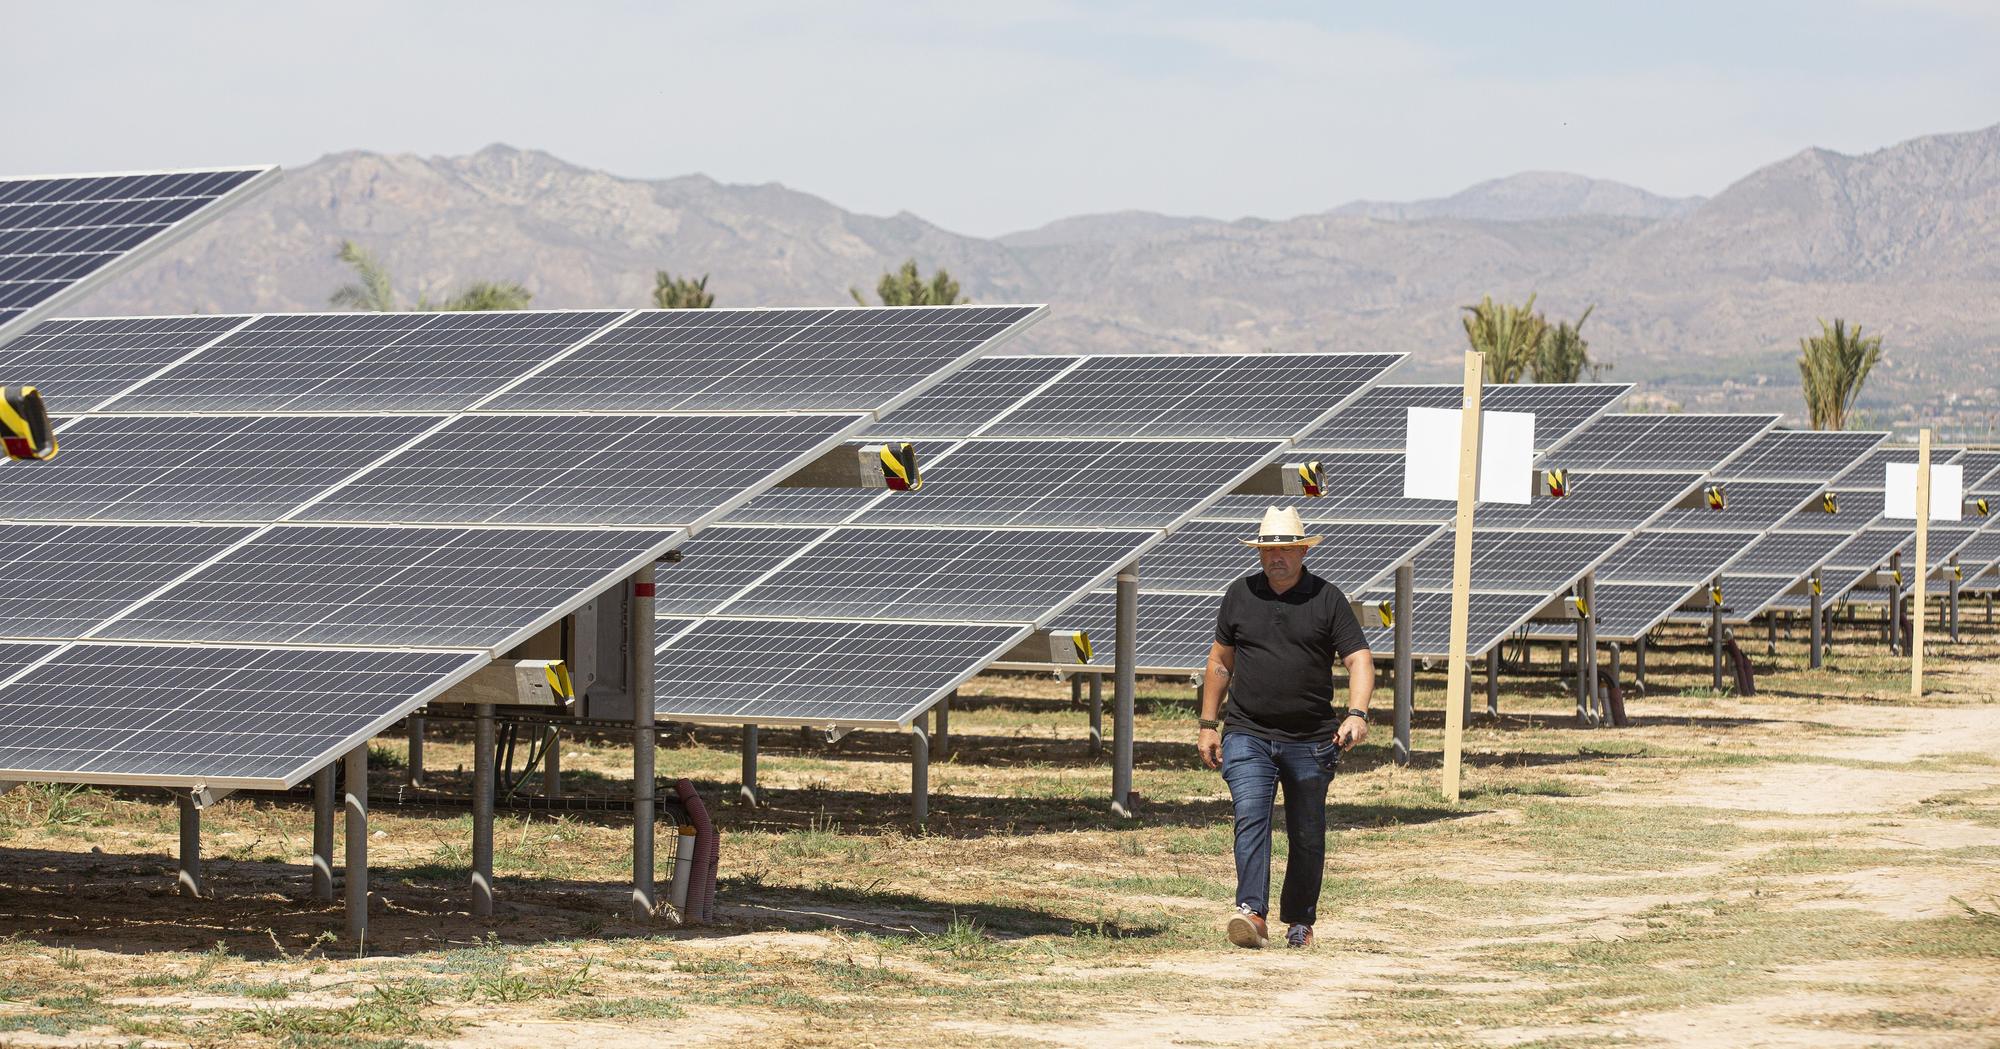 La primera planta solar de la cooperativa eléctrica de Catral ve la luz después de tres años